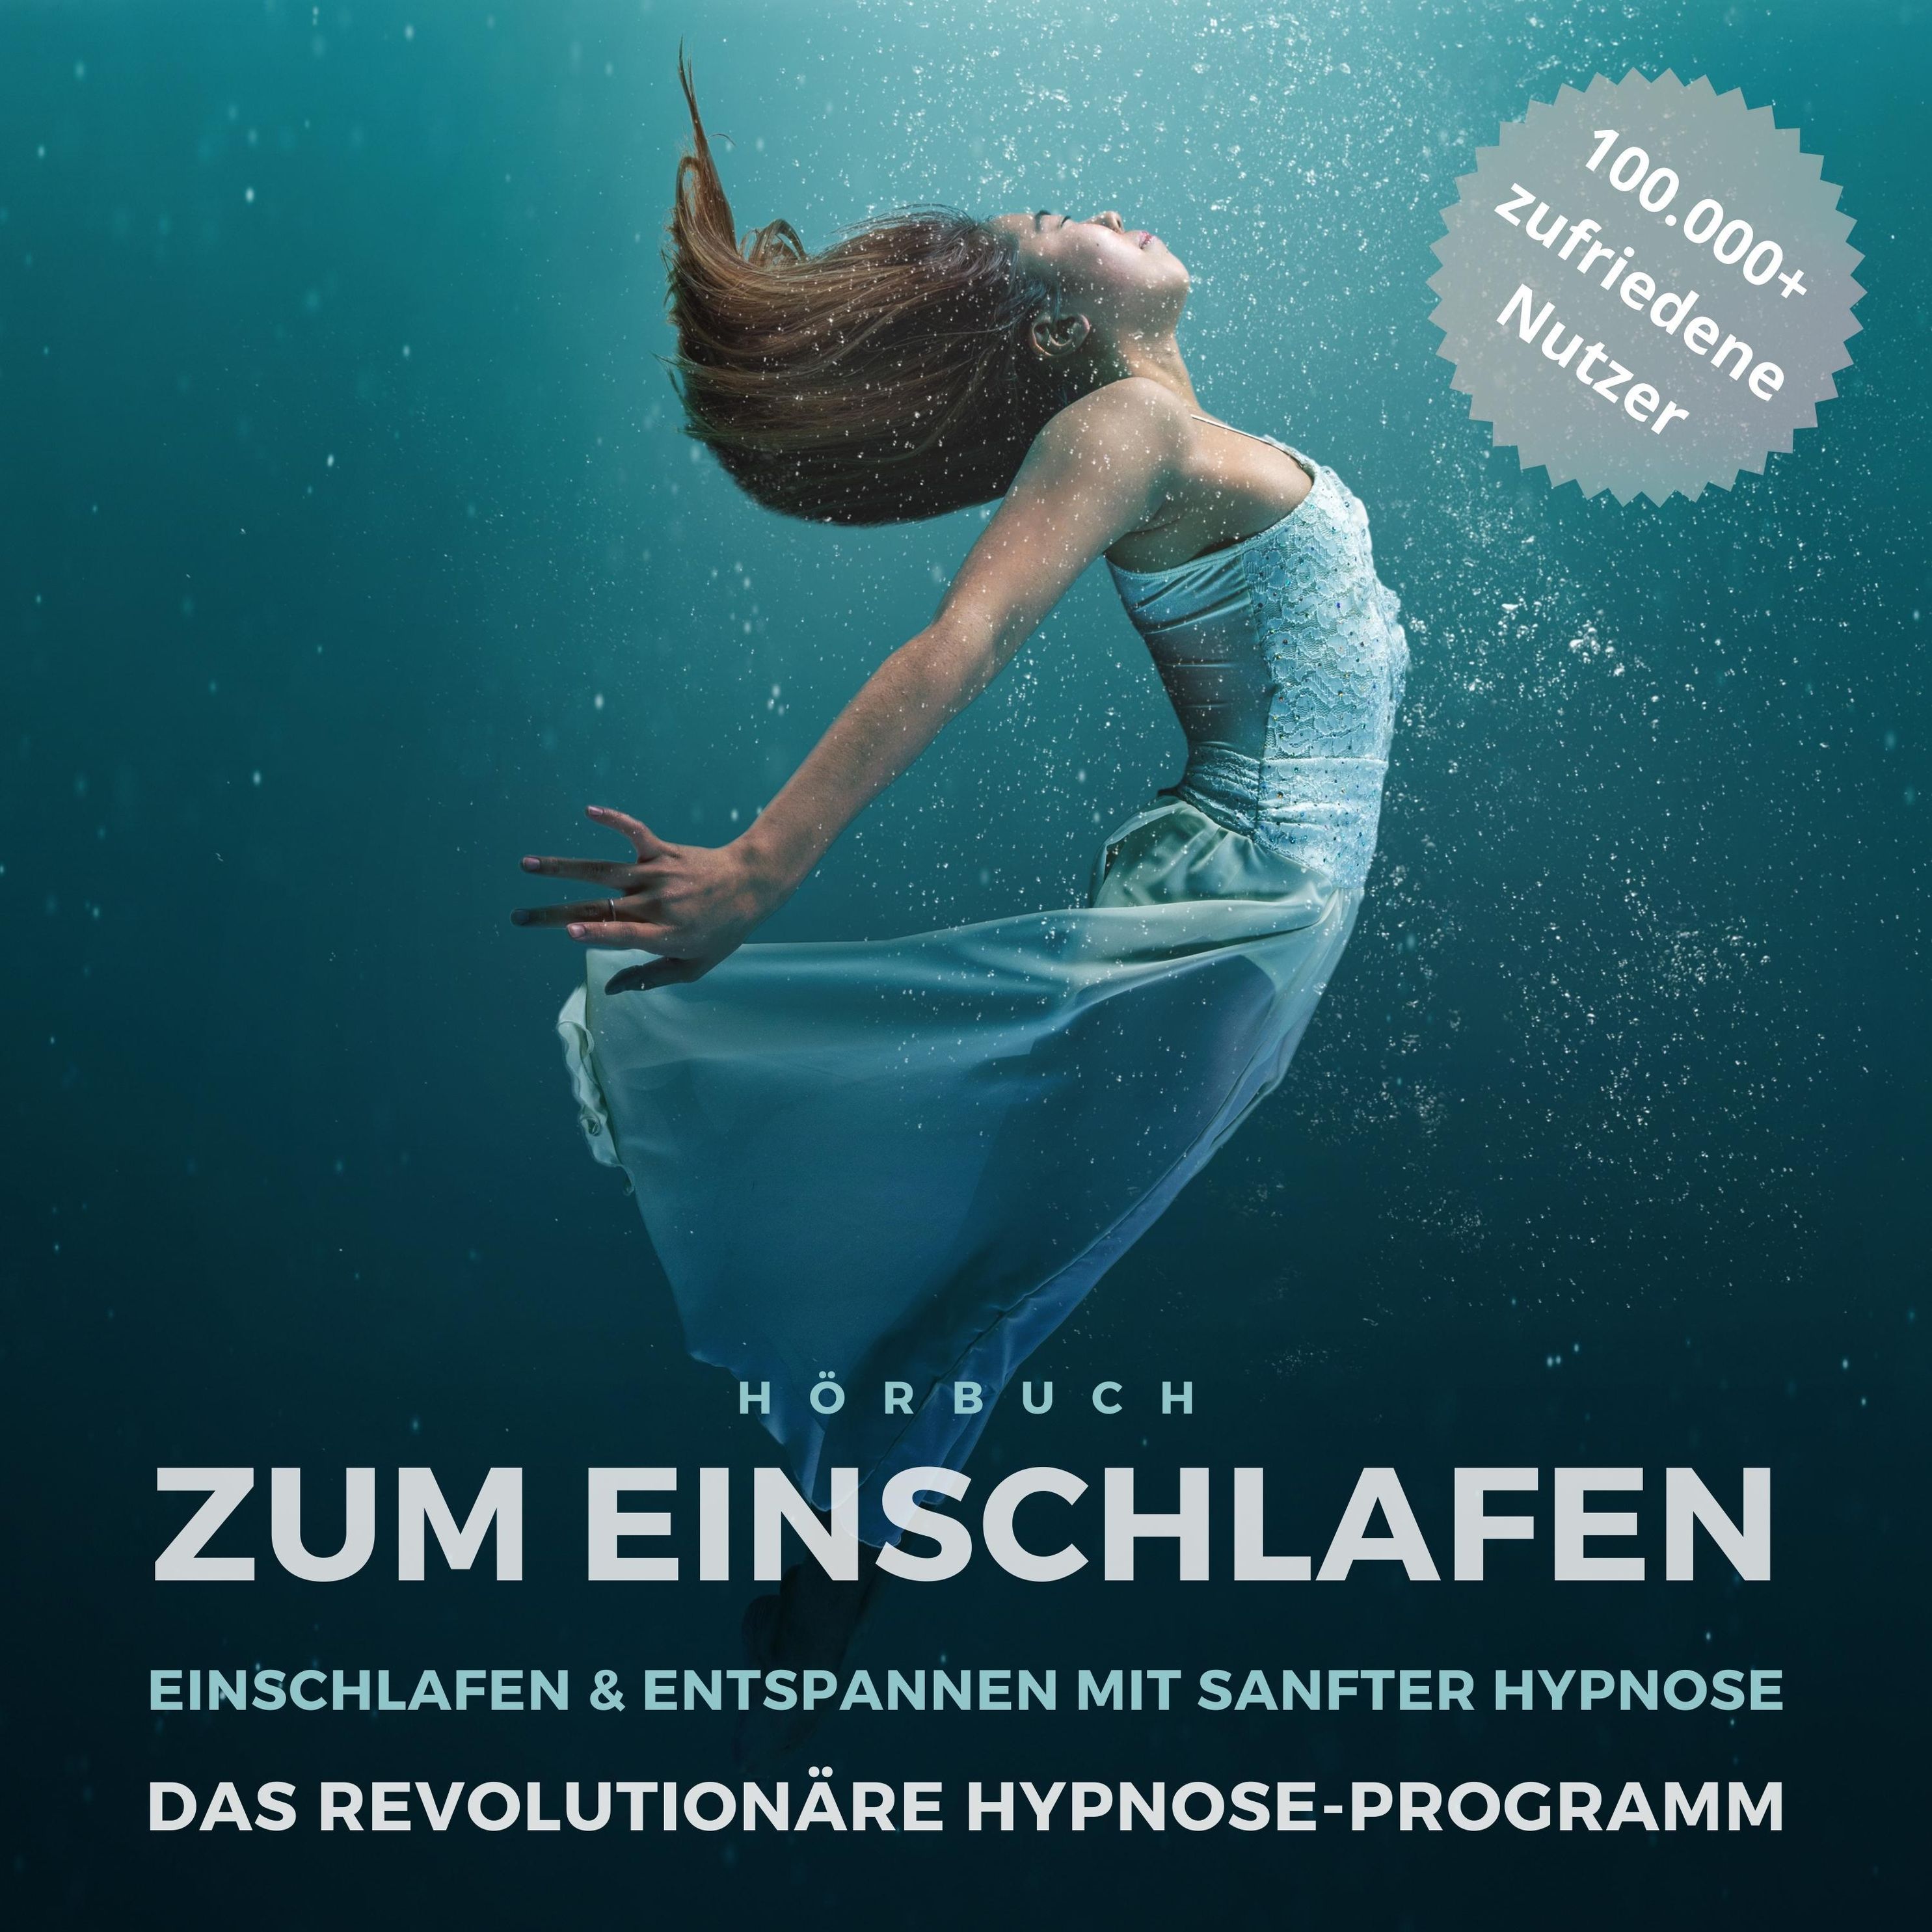 Hörbuch zum Einschlafen: Einschlafen & entspannen mit sanfter Hypnose  Hörbuch Download